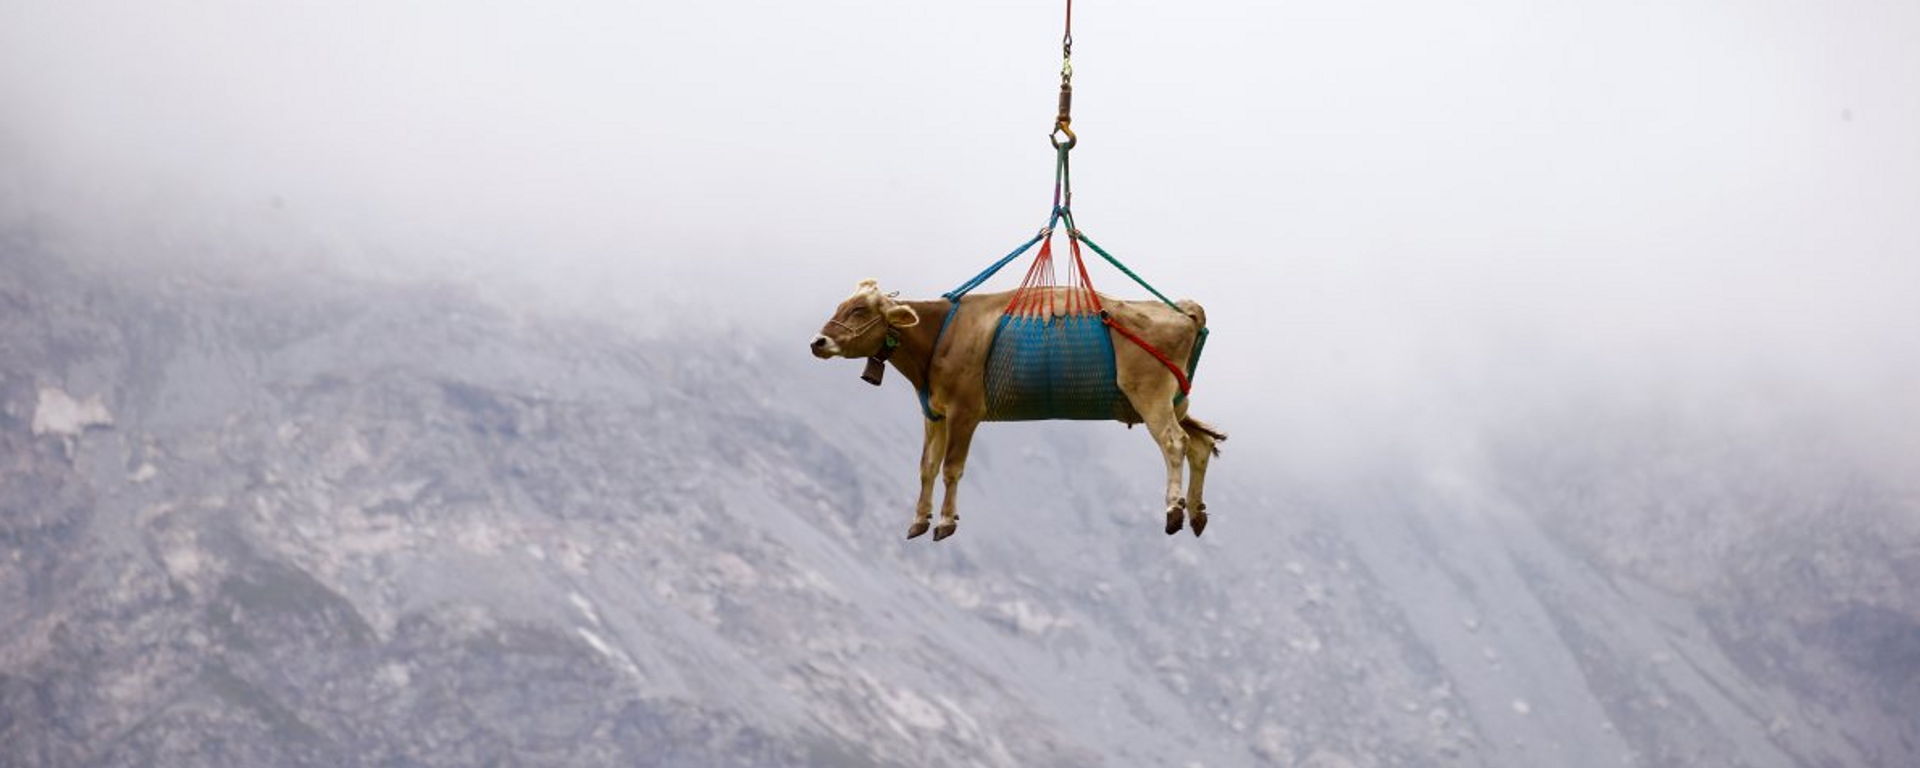 İsviçre'de yaralanan inekler helikopterle taşındı - Sputnik Türkiye, 1920, 28.08.2021